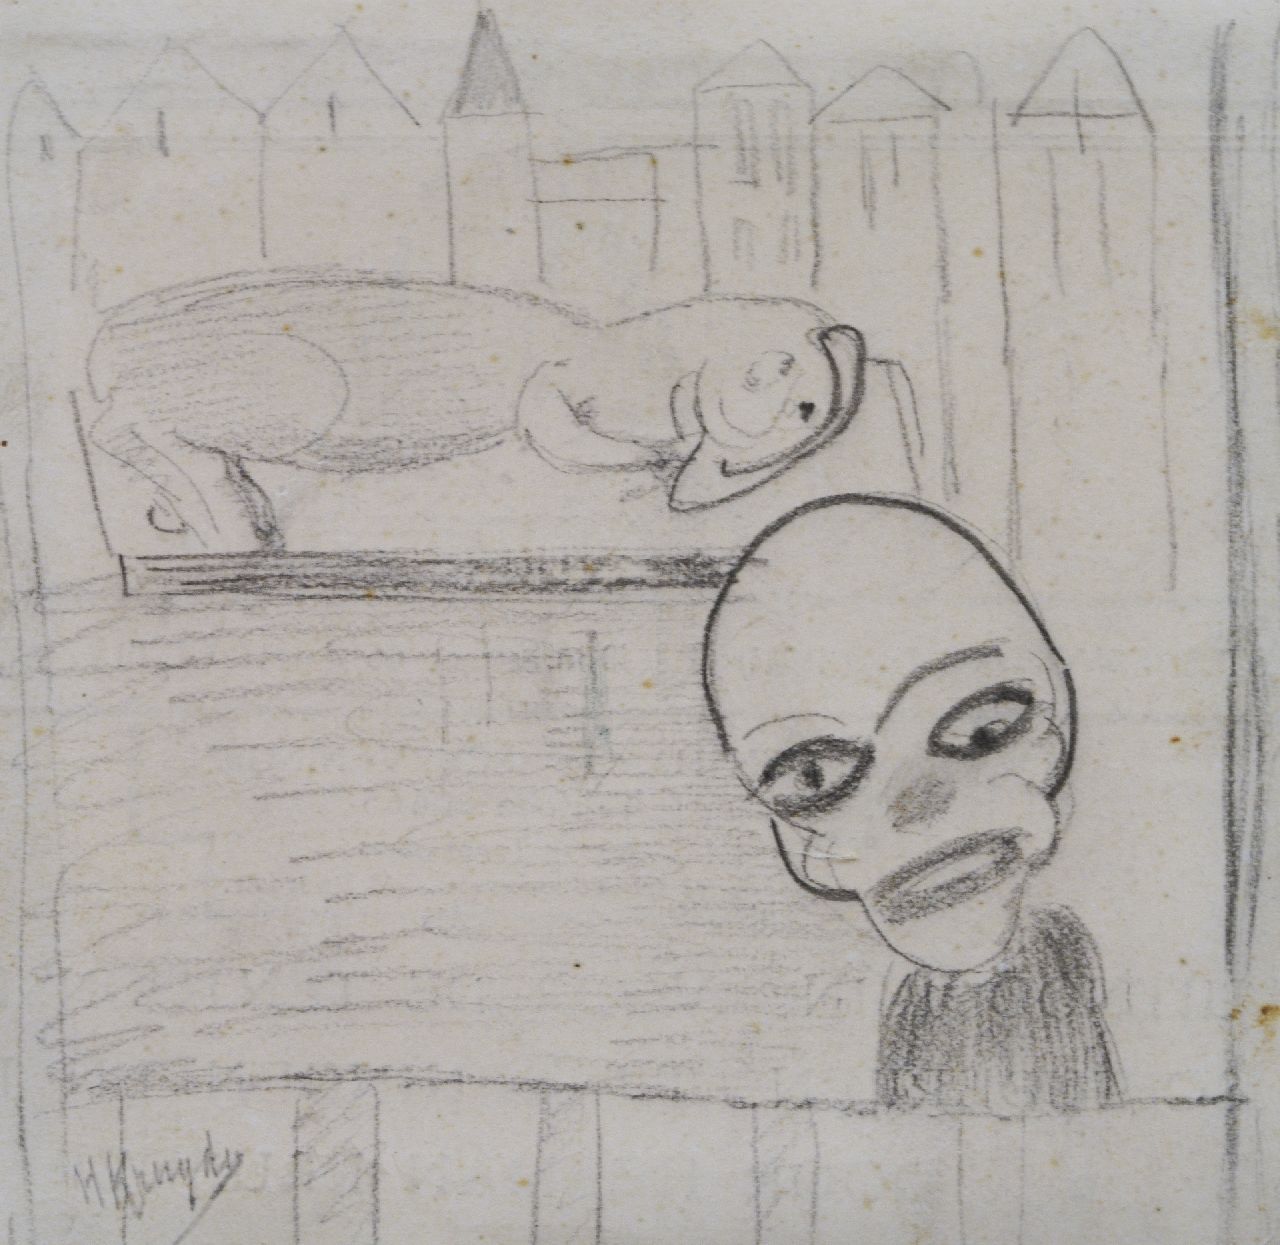 Kruyder H.J.  | 'Herman' Justus Kruyder | Aquarellen en tekeningen te koop aangeboden | Clown en dier, zwart krijt op papier 10,0 x 10,2 cm, gesigneerd linksonder